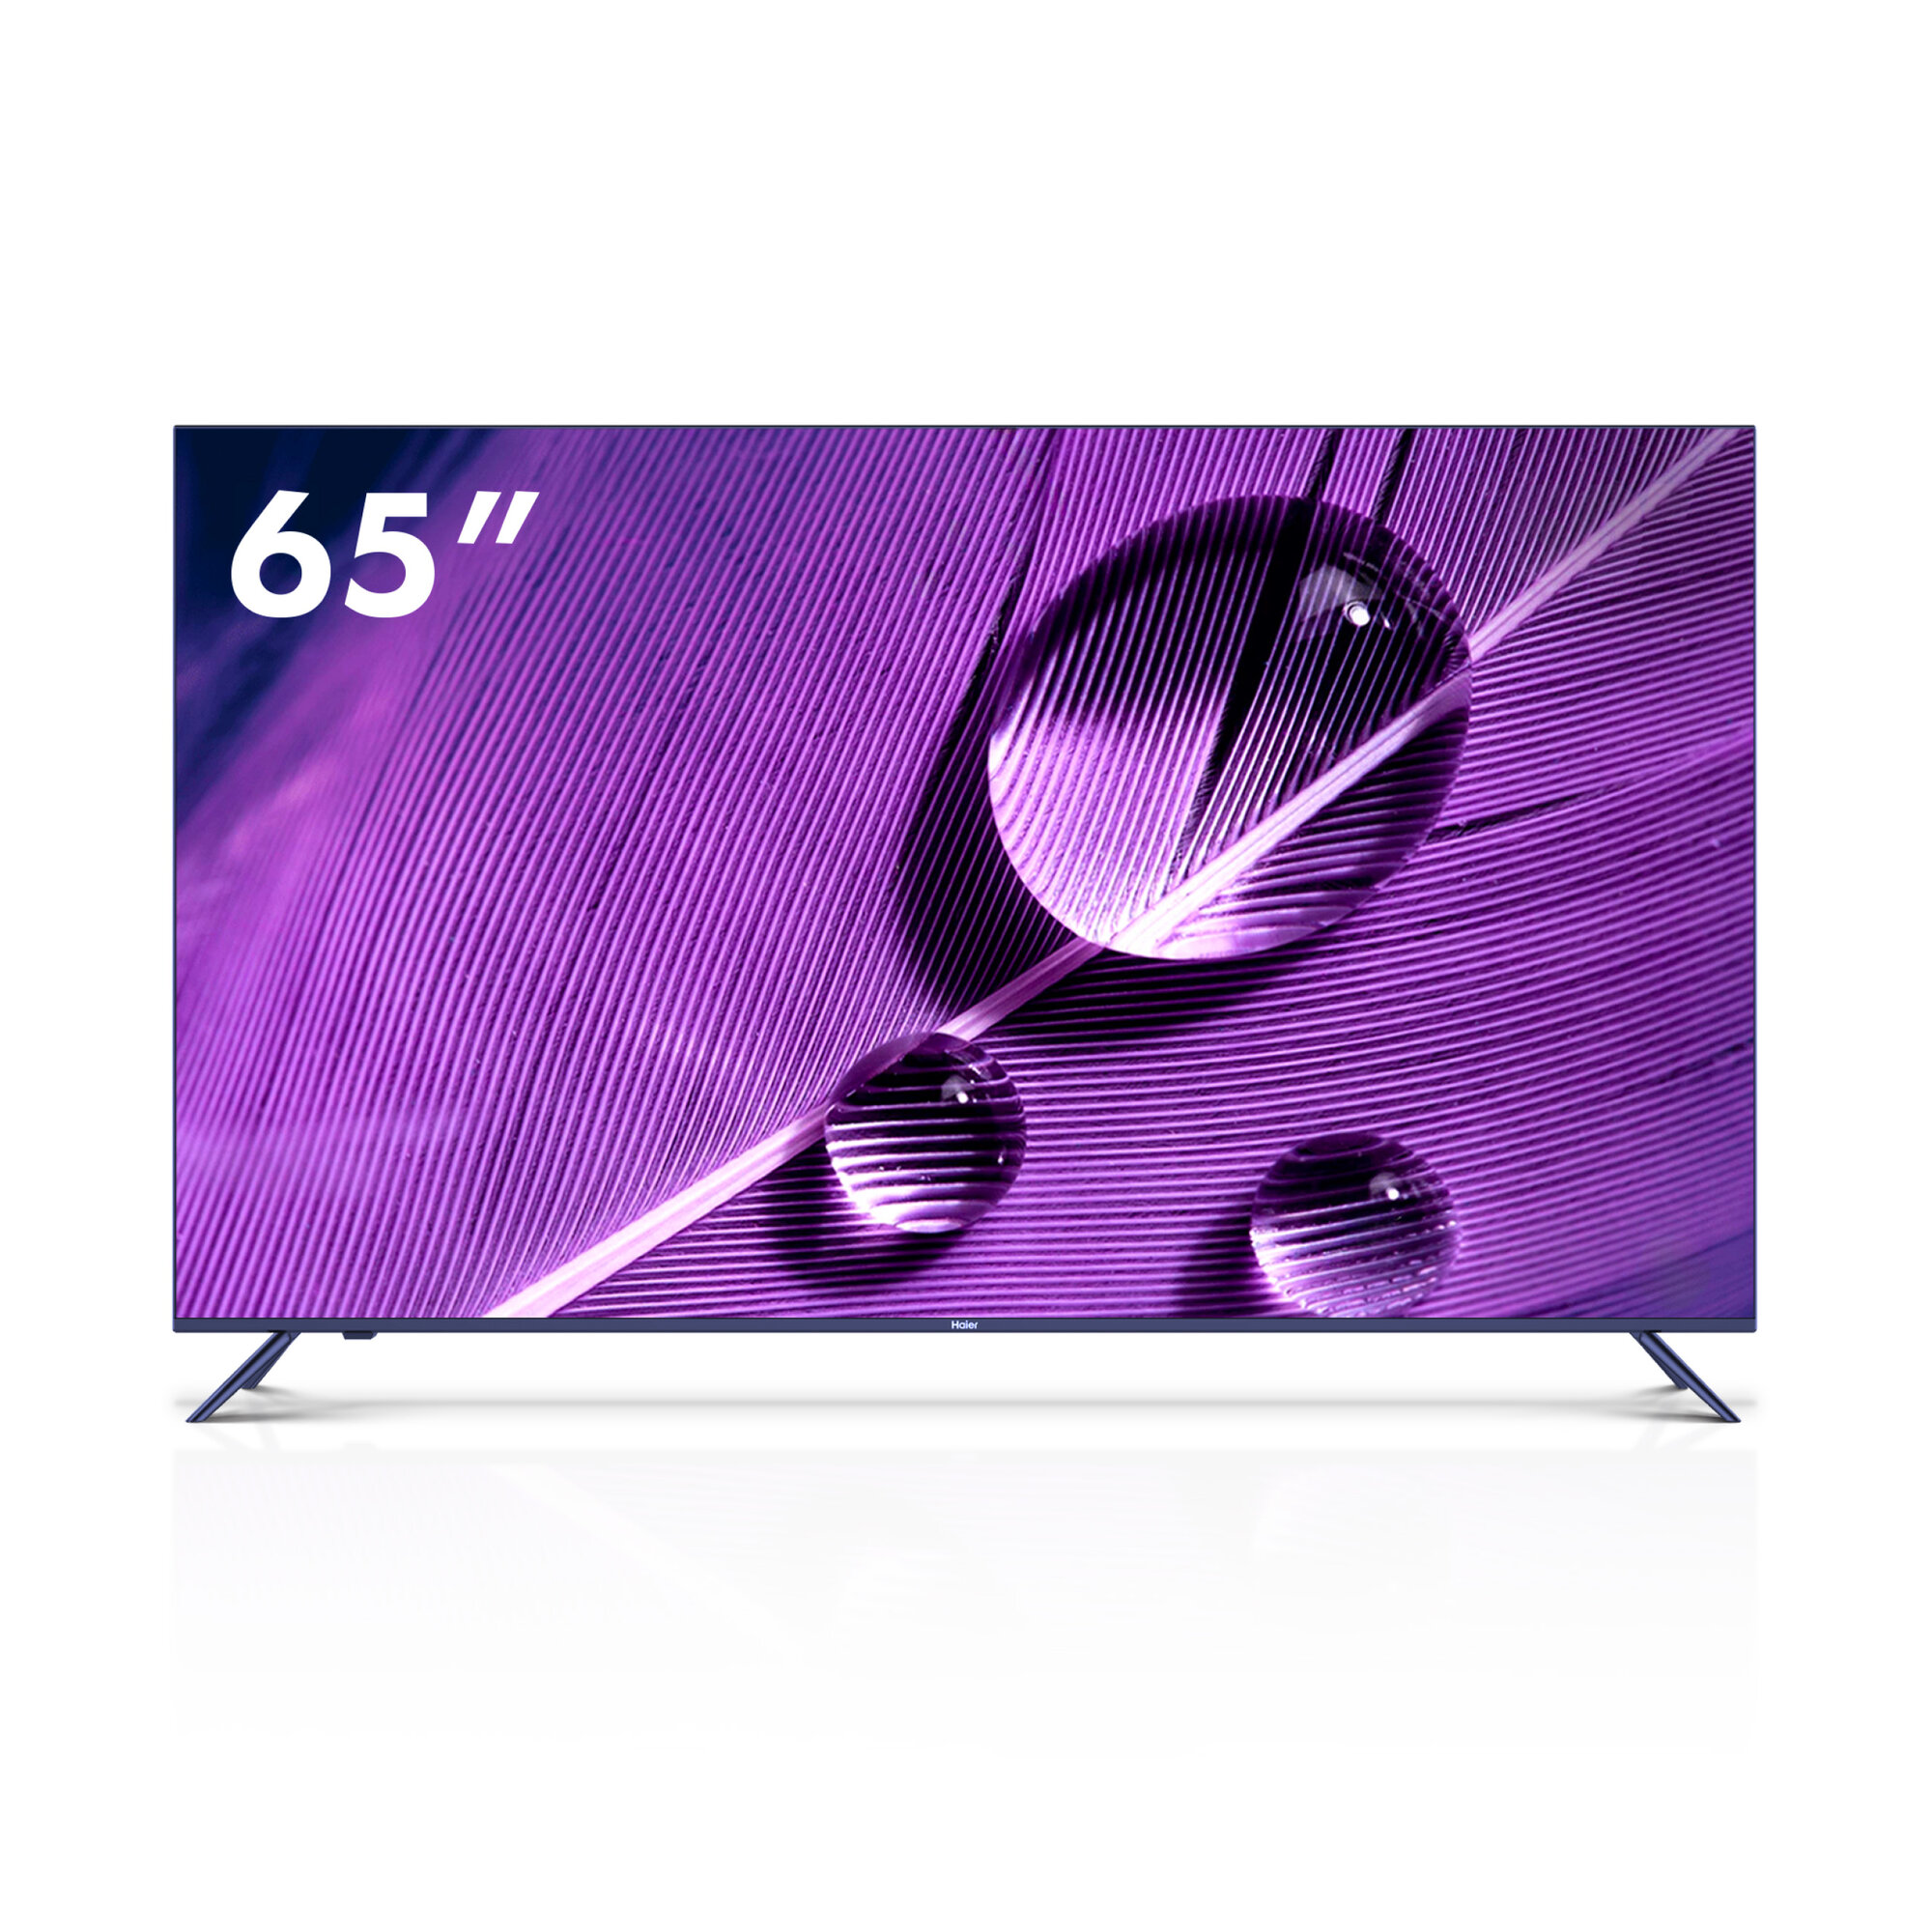 65" Телевизор Haier 65 Smart TV S1 2022 QLED HDR LED